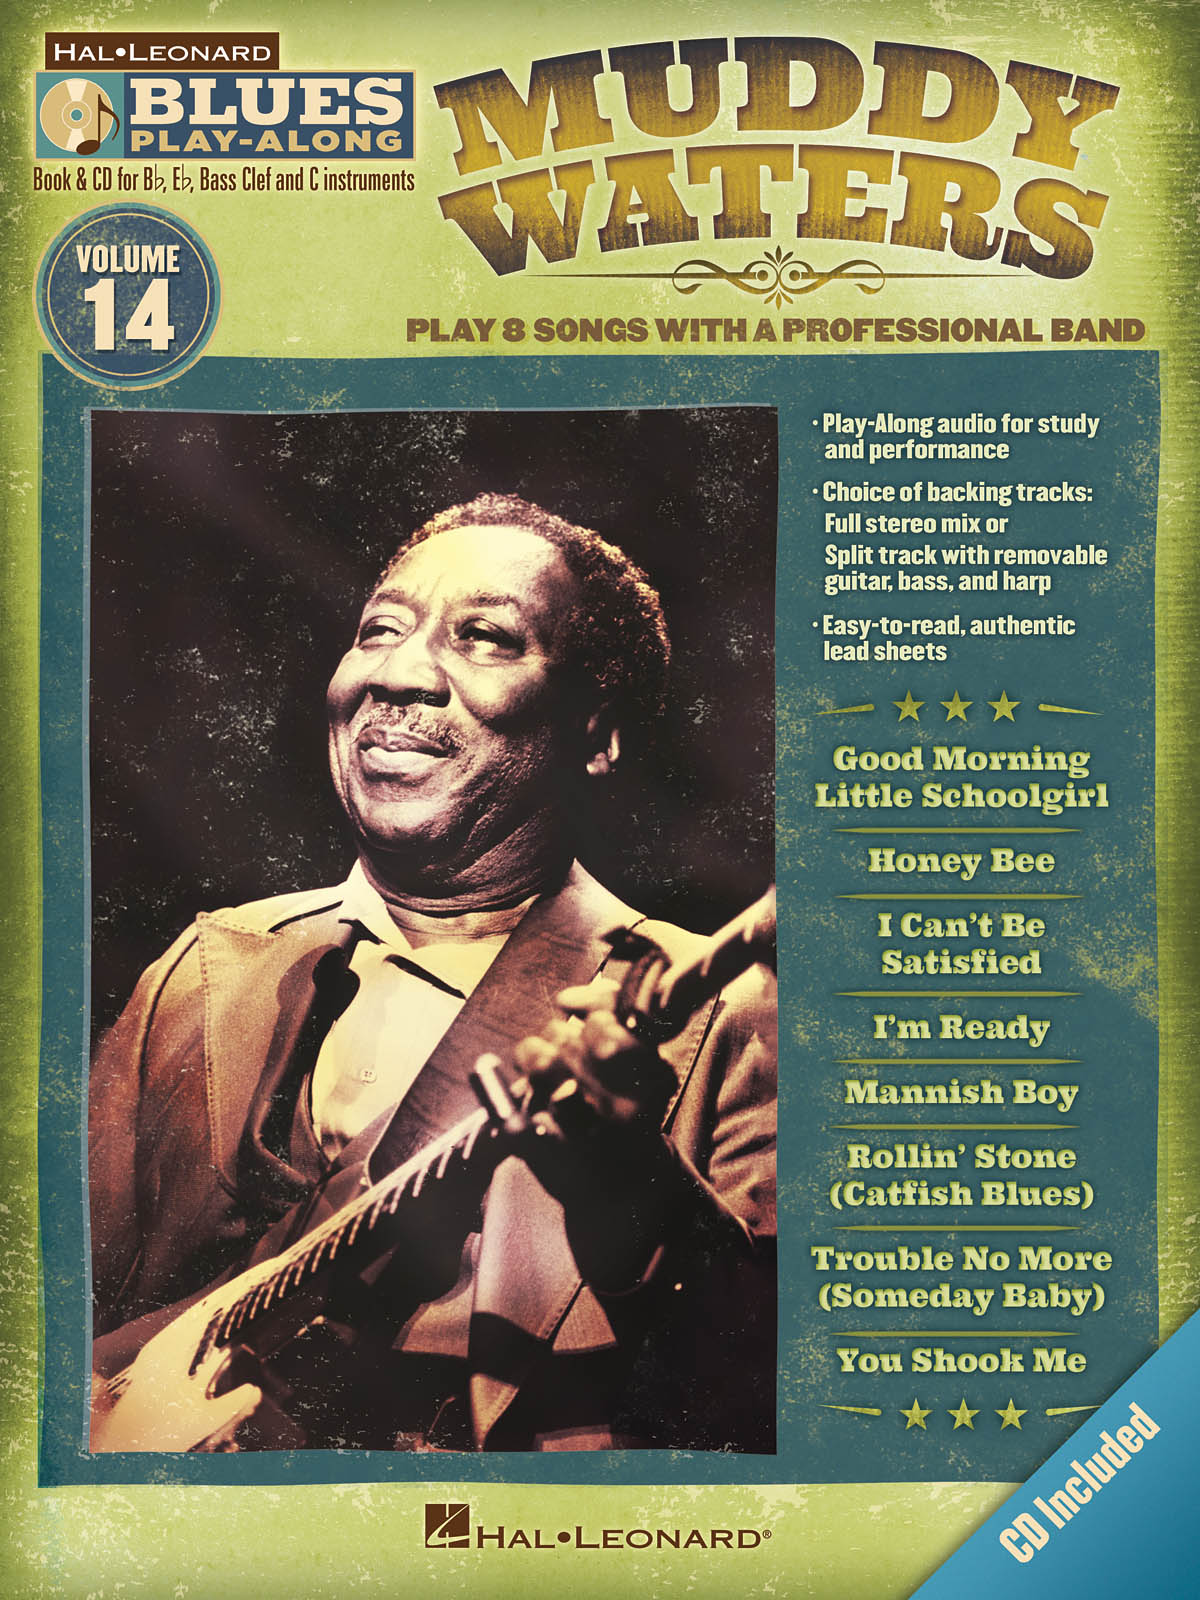 Muddy Waters - Blues Play-Along Volume 14 - melodie s akordy pro nástroje v ladění C